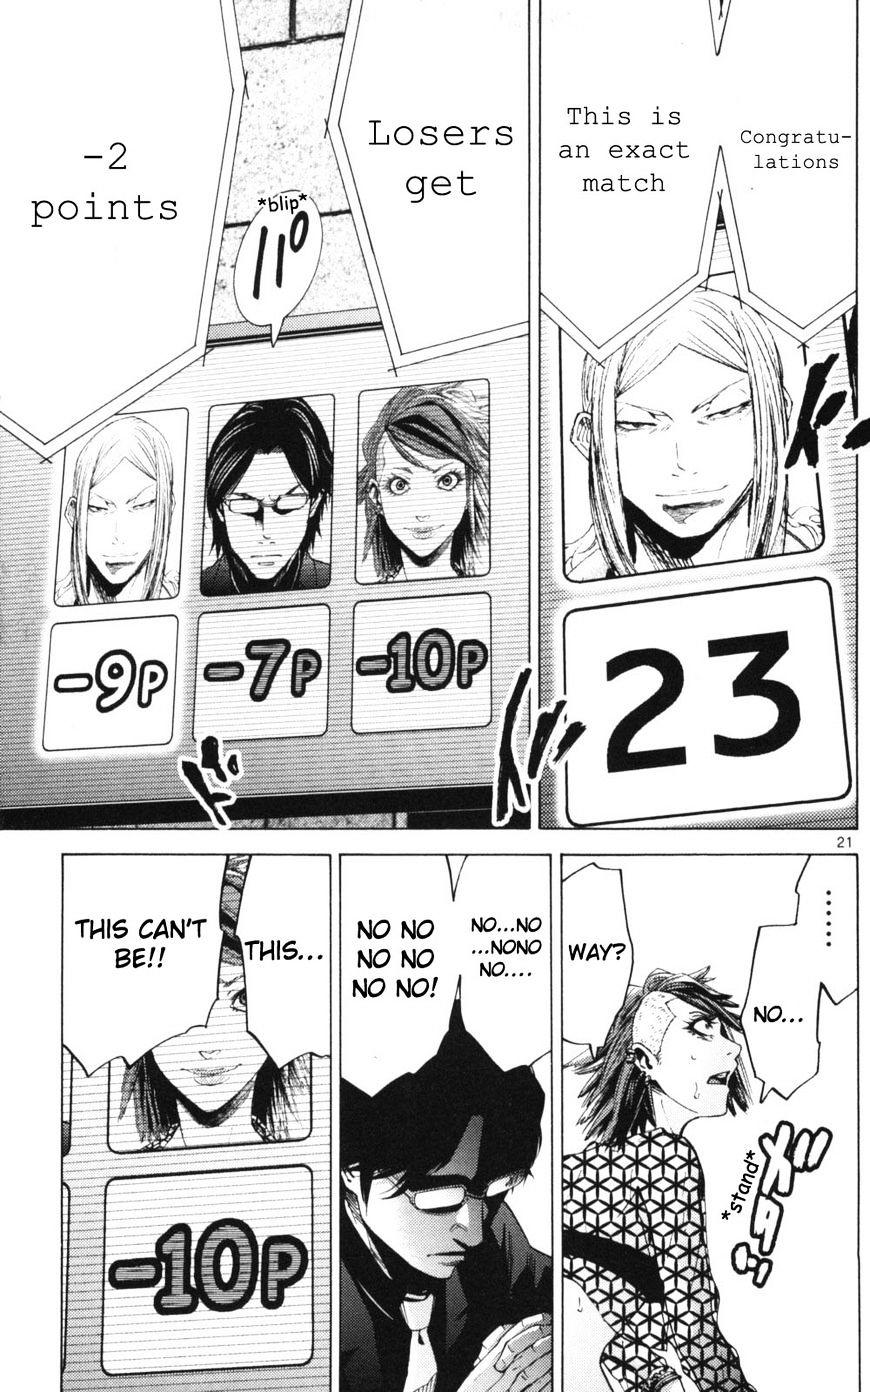 Imawa No Kuni No Alice Chapter 51.3 : Side Story 6 - King Of Diamonds (3) page 21 - Mangakakalot